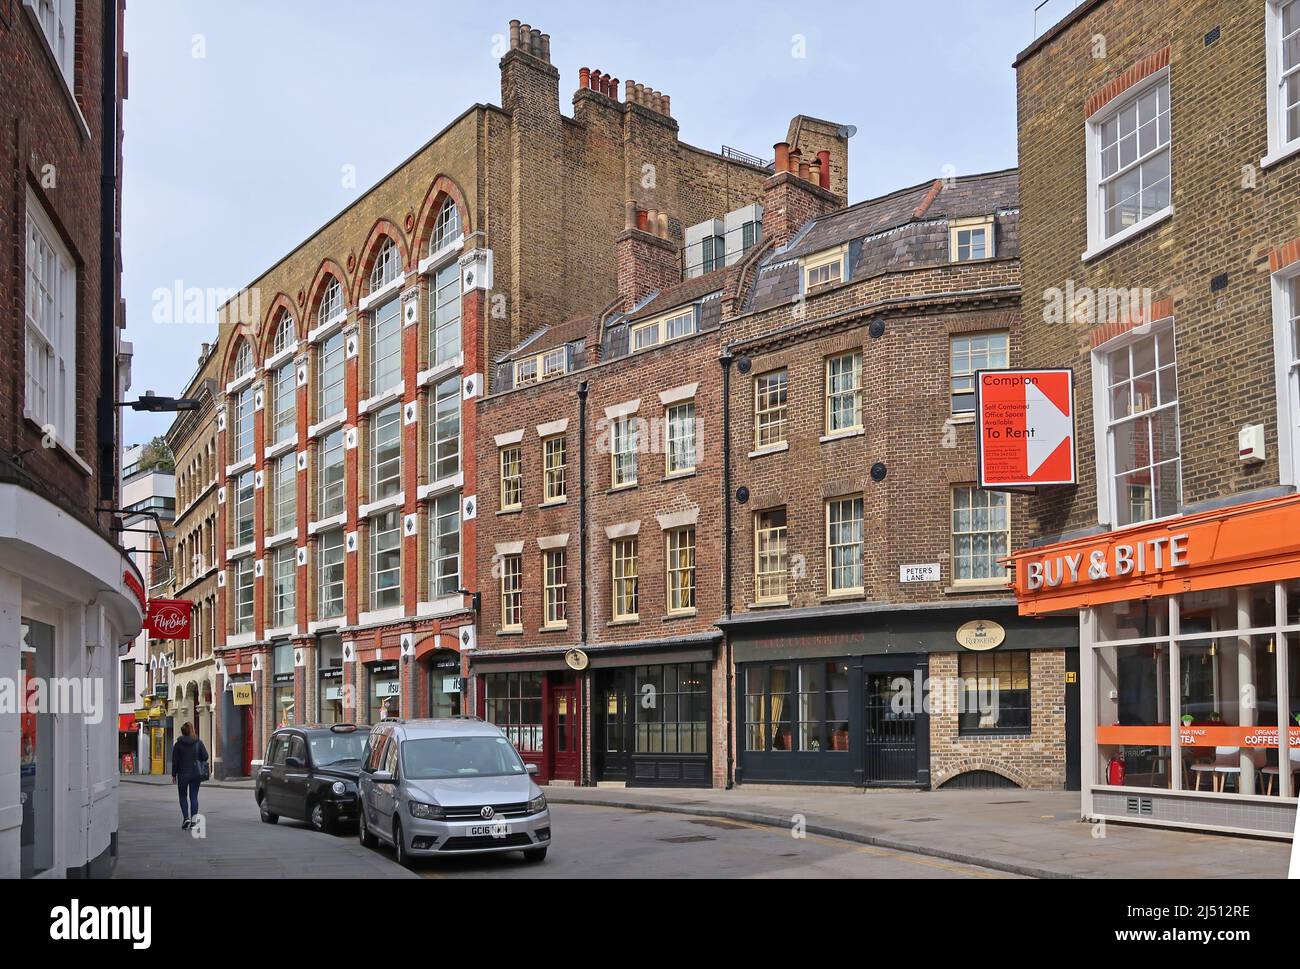 Cowcross Street nella città di Londra, Regno Unito. Strada stretta, storica e popolare luogo di ripresa vicino alla stazione di Farringdon e al mercato Smithfield. Foto Stock